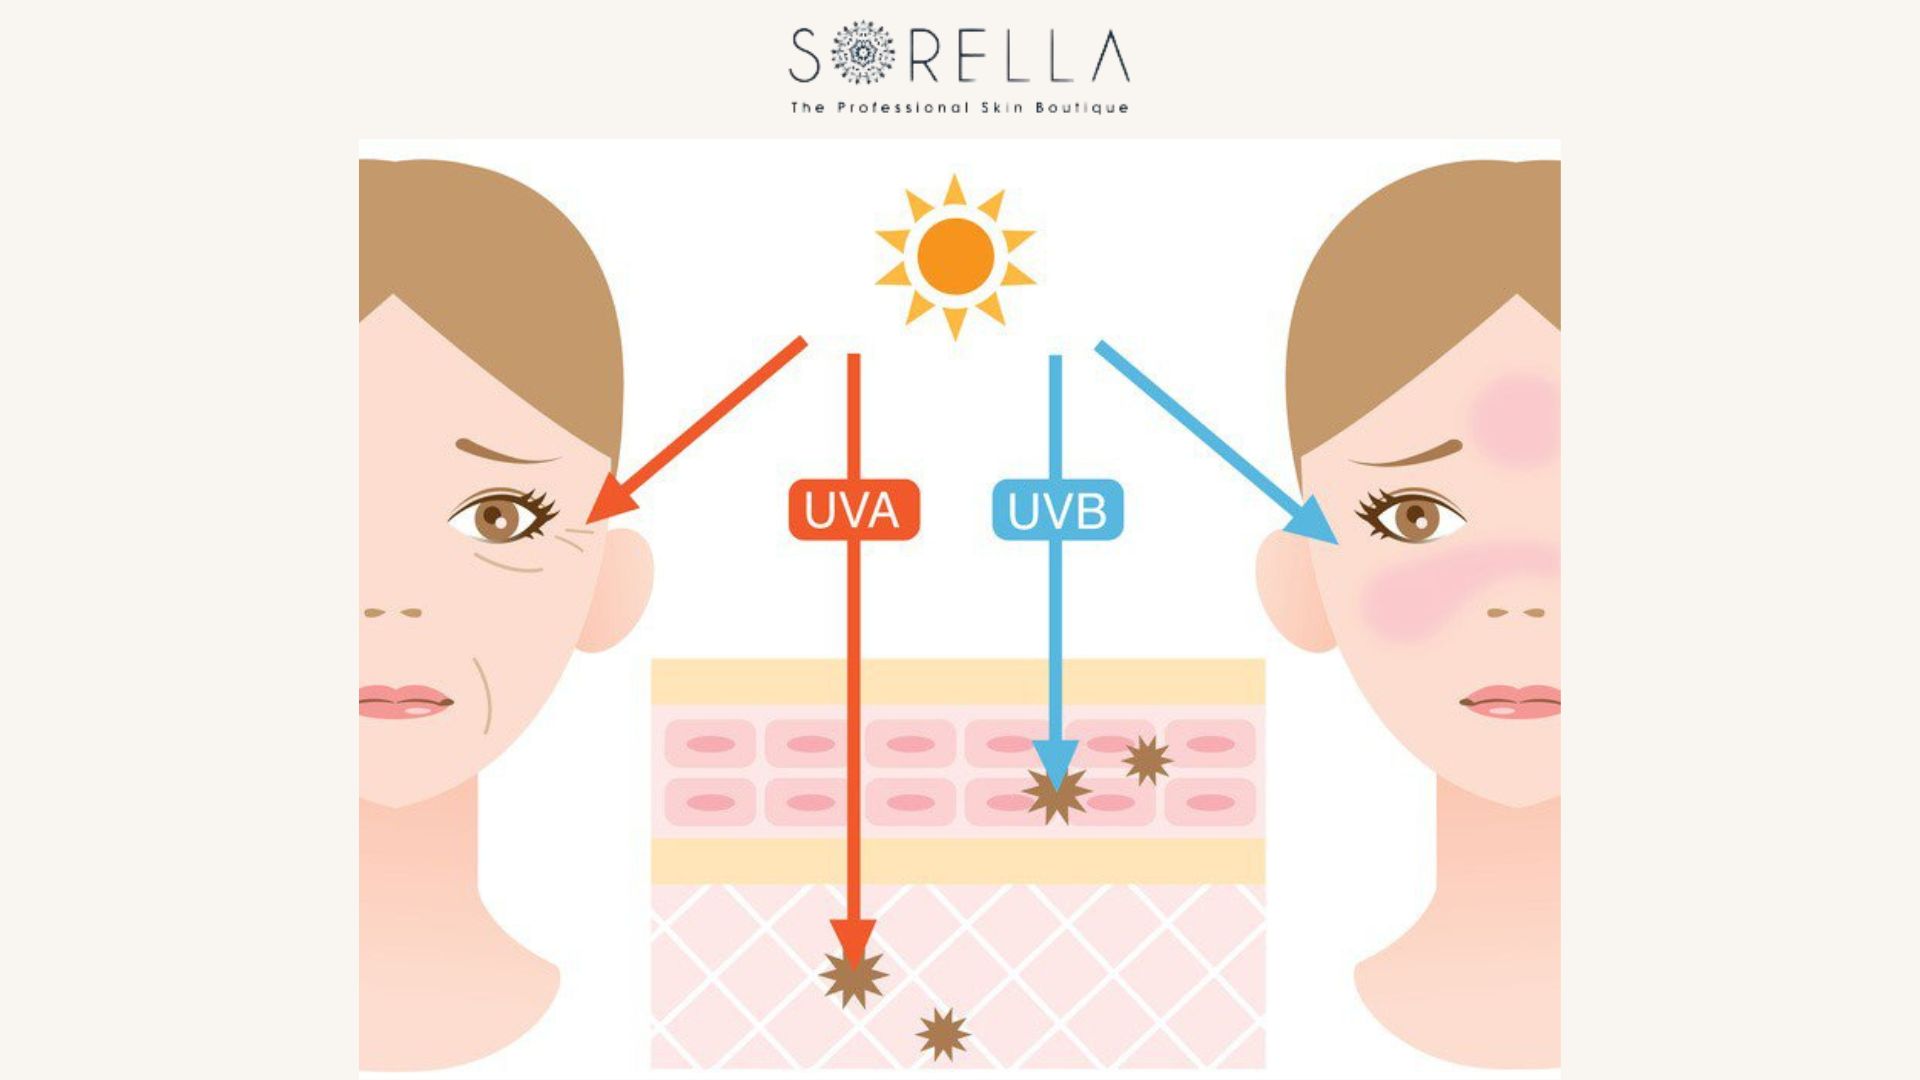 5 Cách bảo vệ da khỏi tia UV hiệu quả